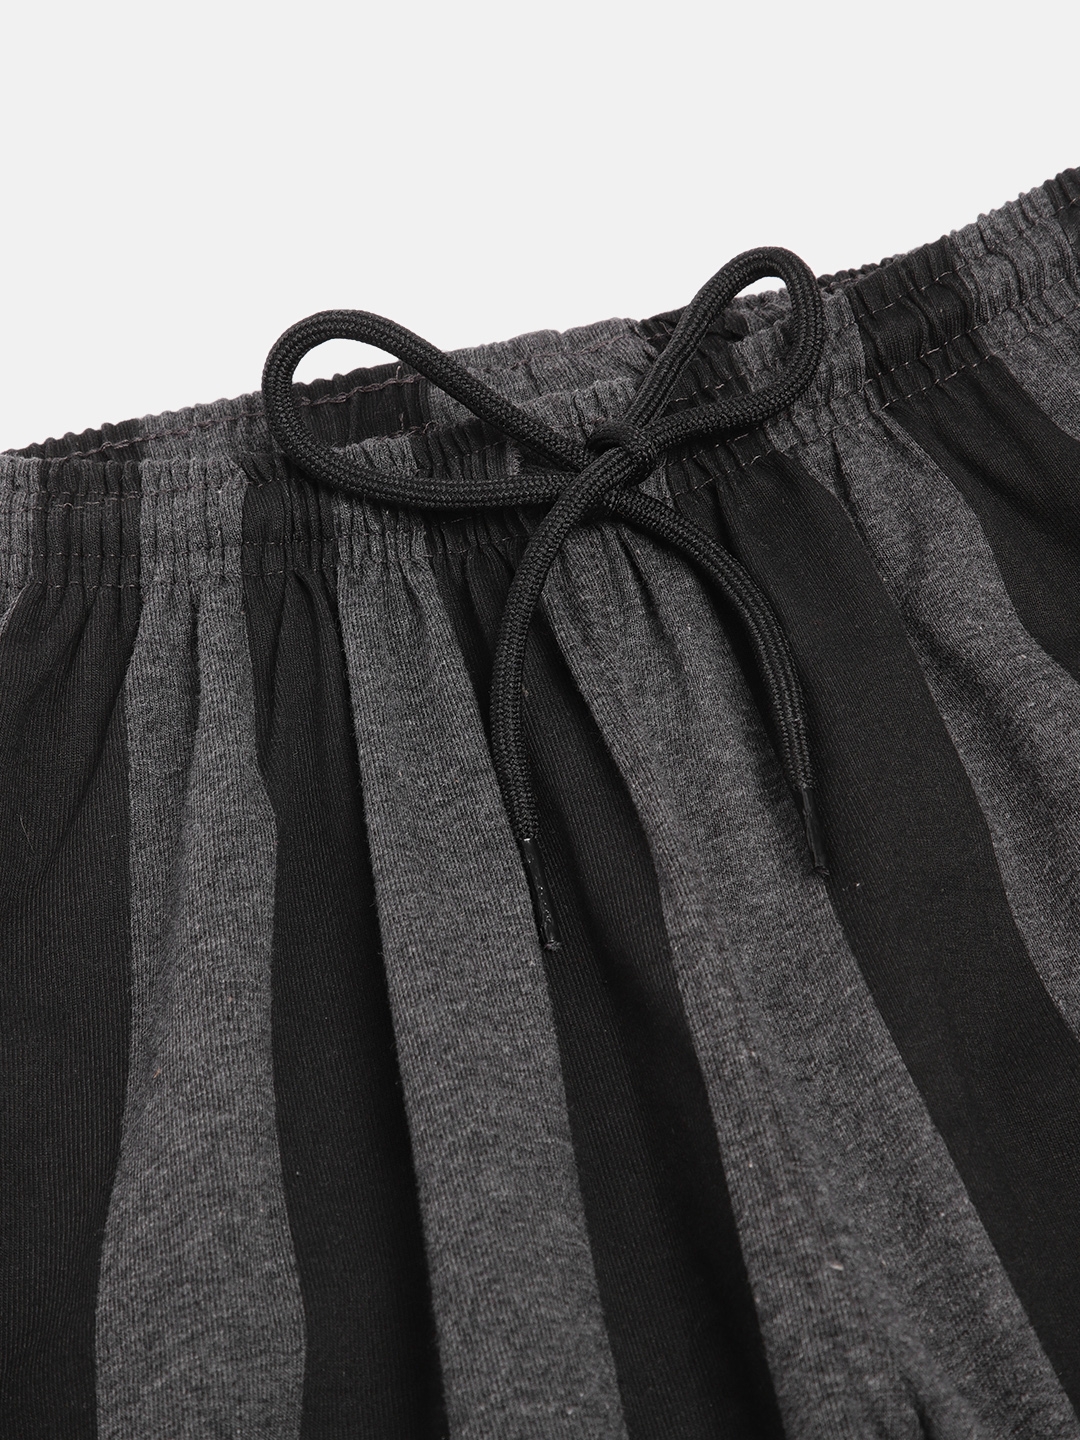 SEYBIL | Seybil teen girls cotton rich printed lounge shorts 5